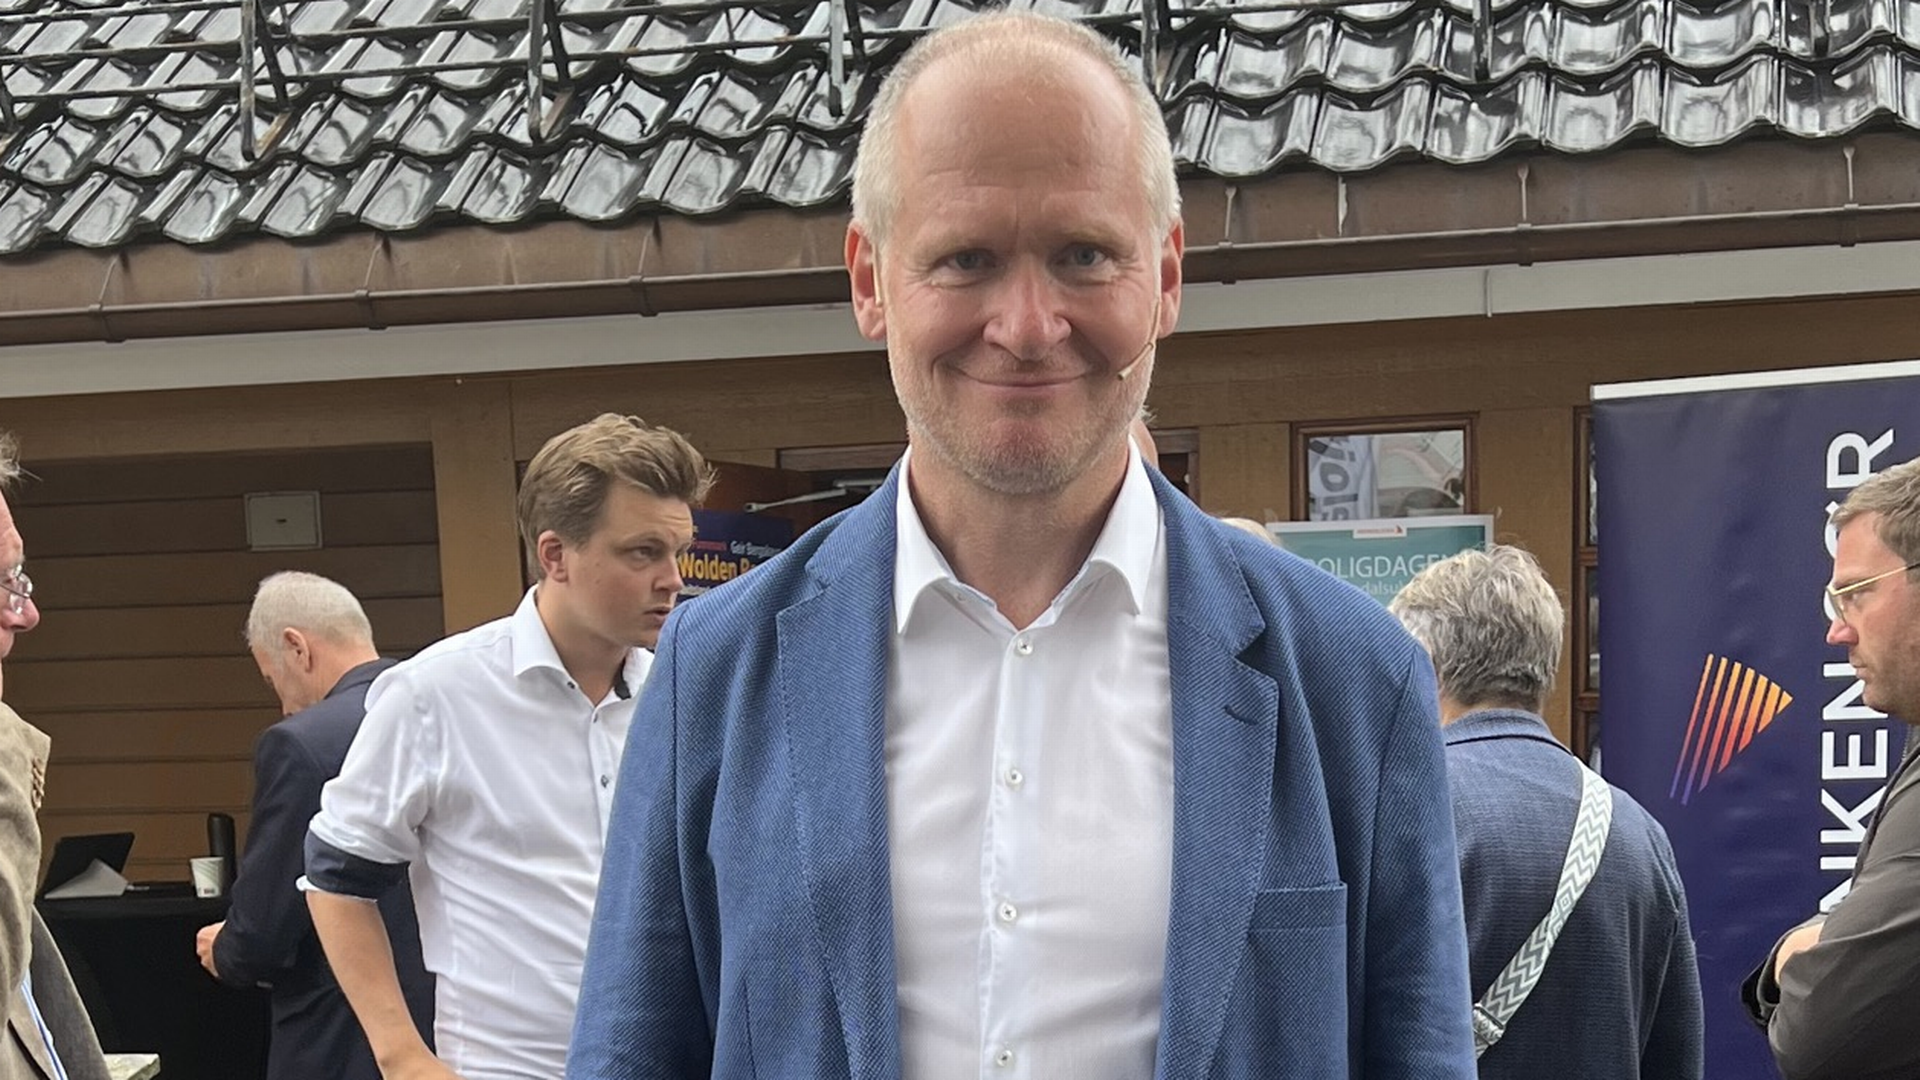 ARENDALSUKA: Henning Laurisen er med i flere paneler i Arendal. Tirsdag var han tilstede under Boligprodusentenes tallslipp. | Foto: Johannes Enli Kalleberg